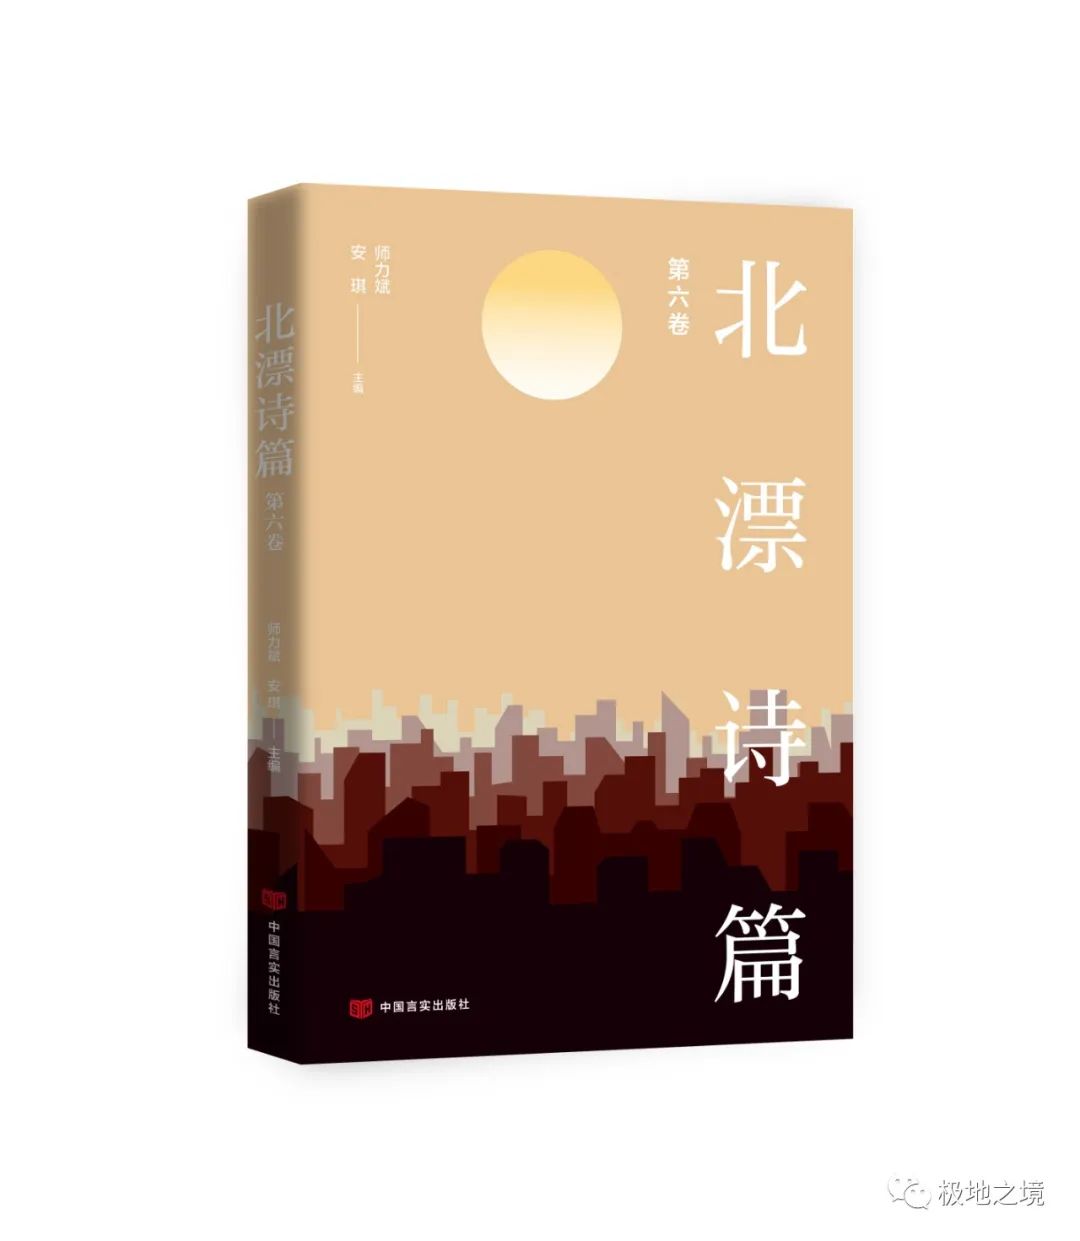 目录 | 《北漂诗篇》第六卷，师力斌、安琪主编，中国言实出版社2023年出版